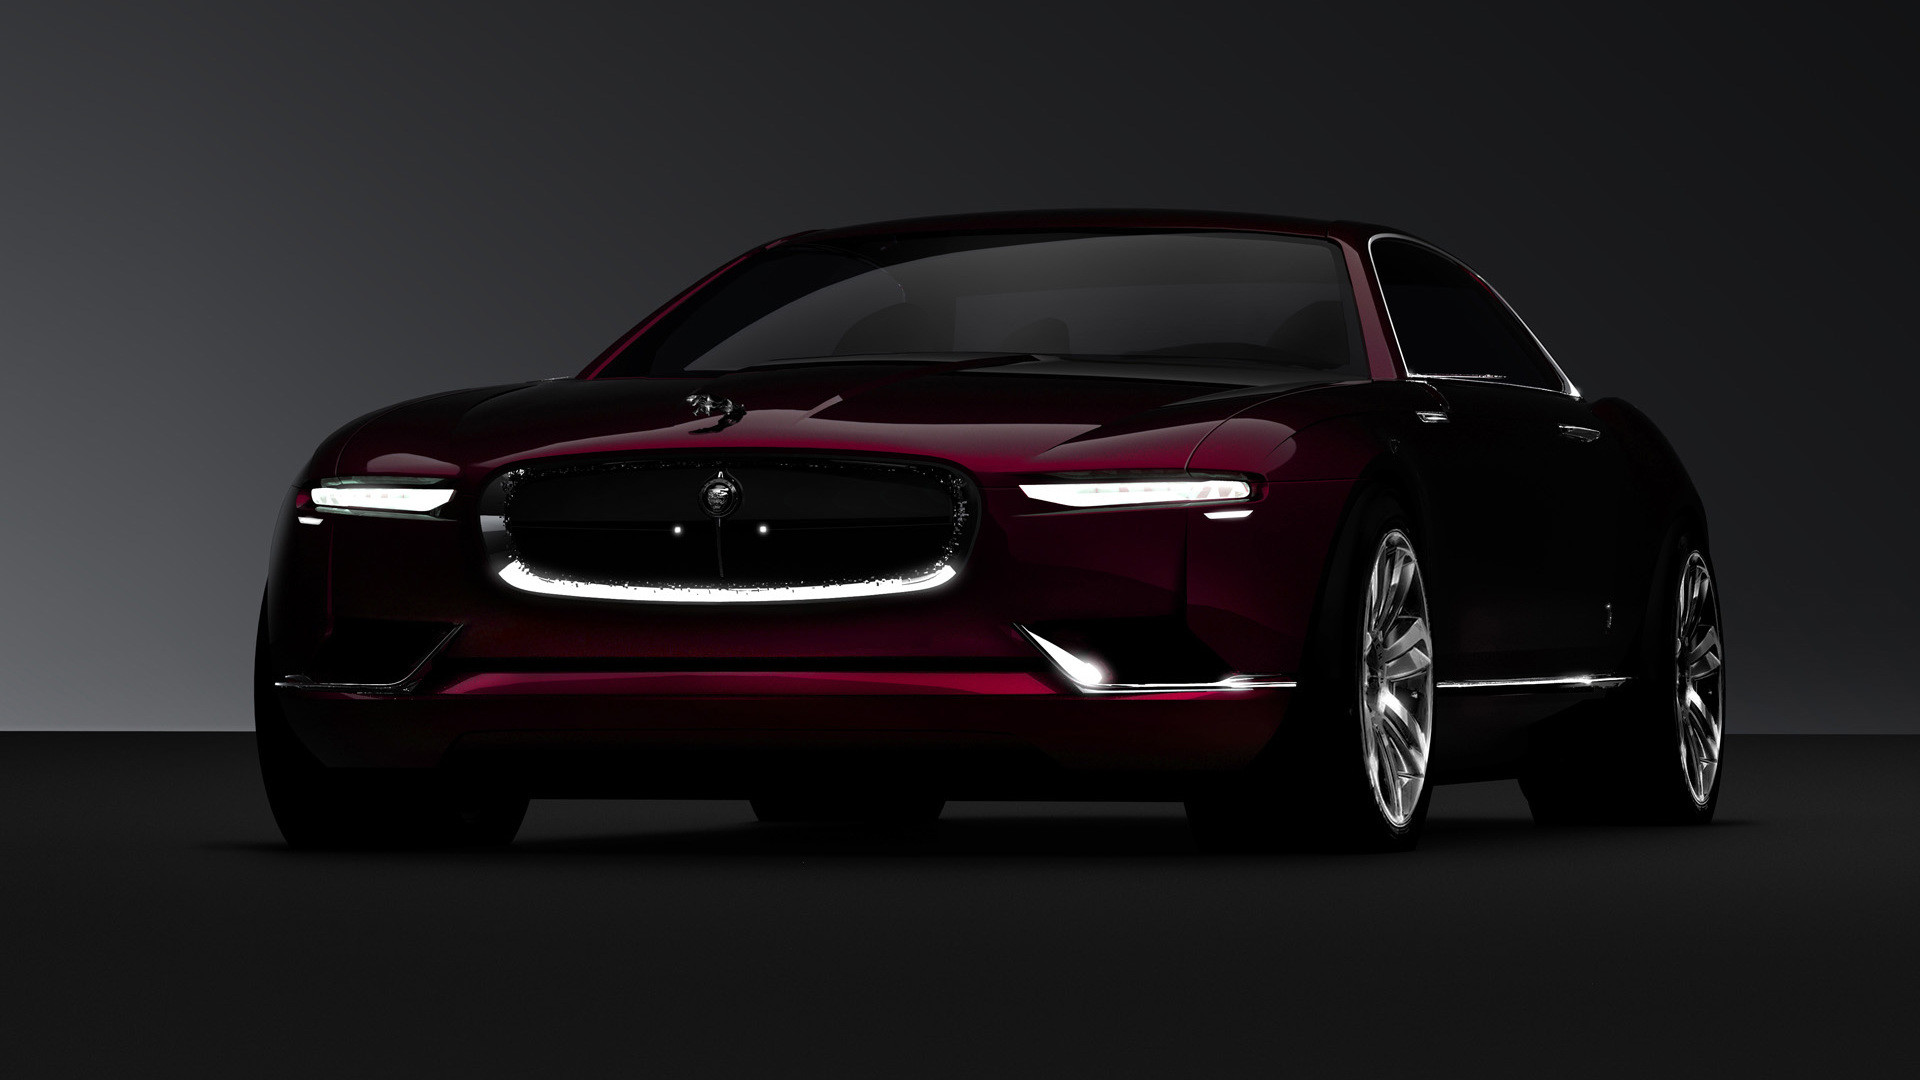 voitures jaguar fonds d'écran hd,véhicule terrestre,véhicule,voiture,véhicule de luxe,voiture pleine grandeur